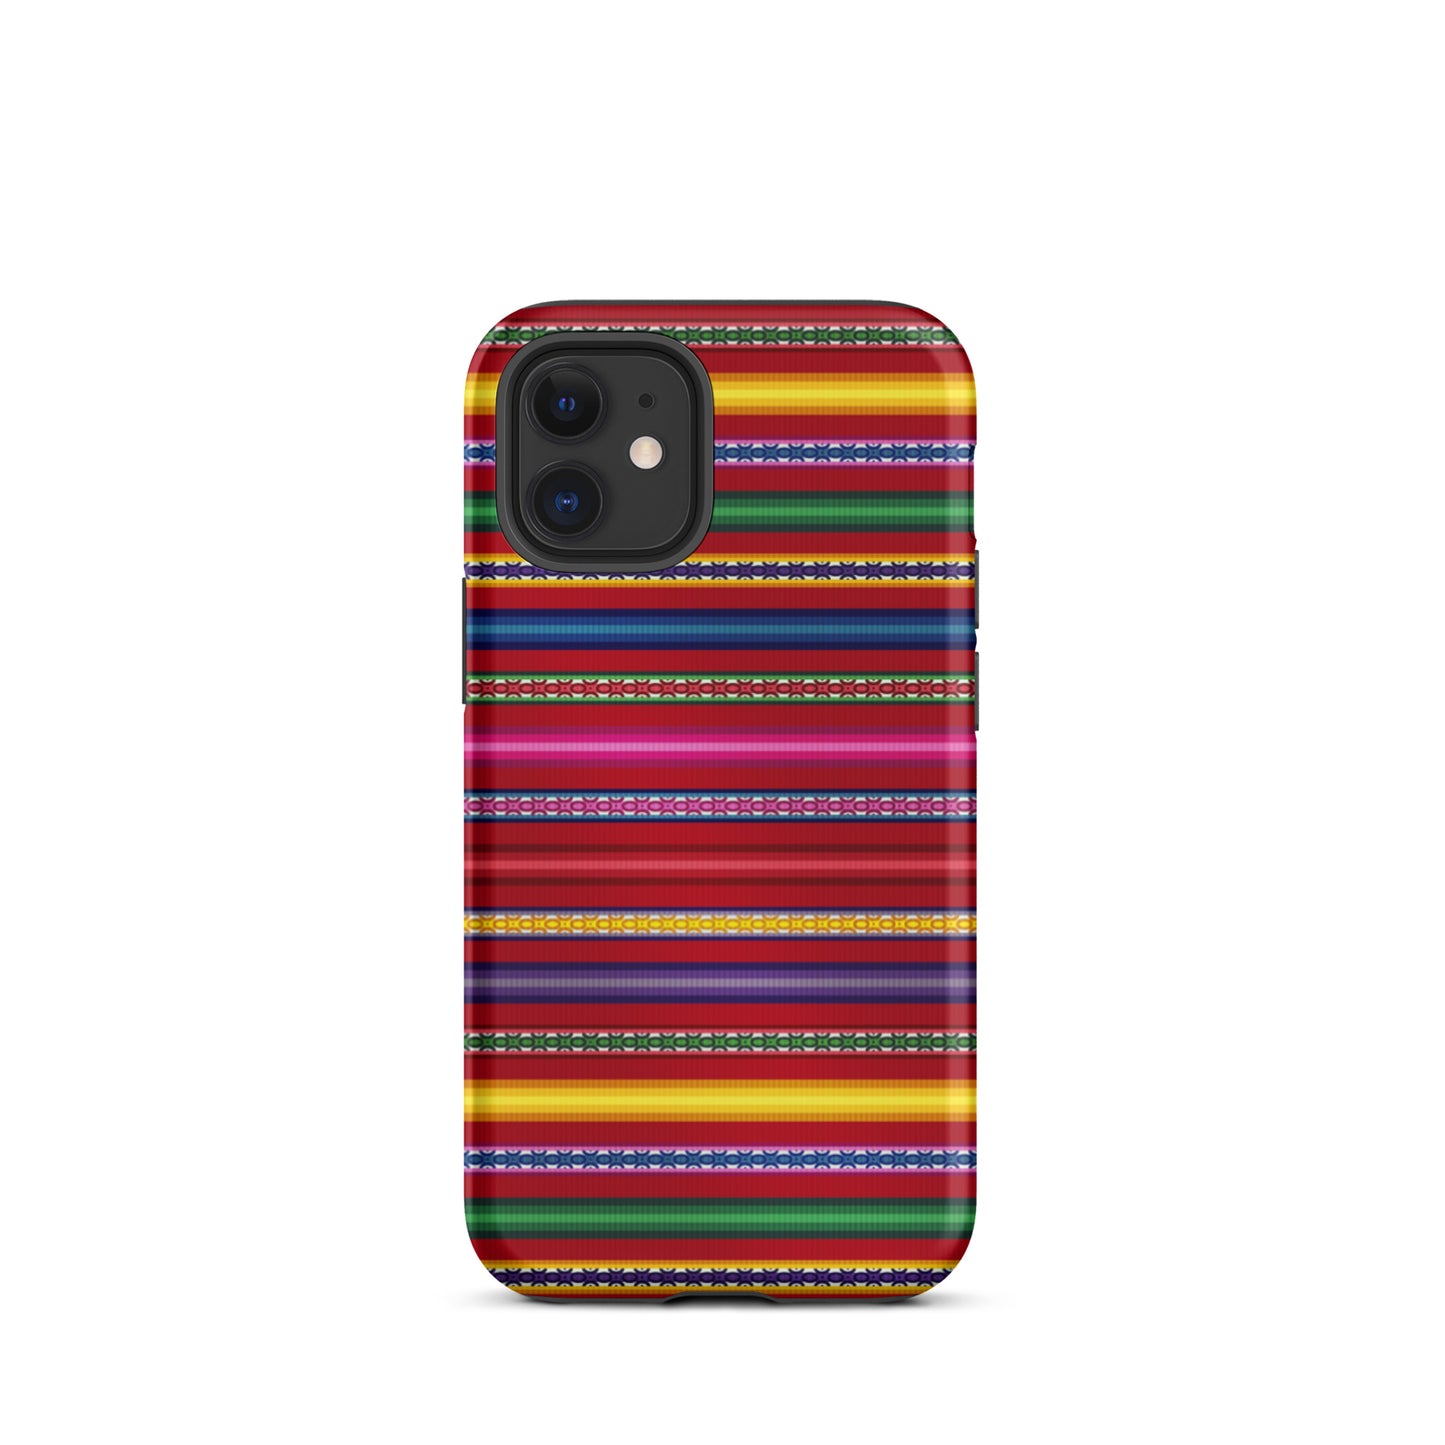 Peruvian Tough iPhone 12 mini case